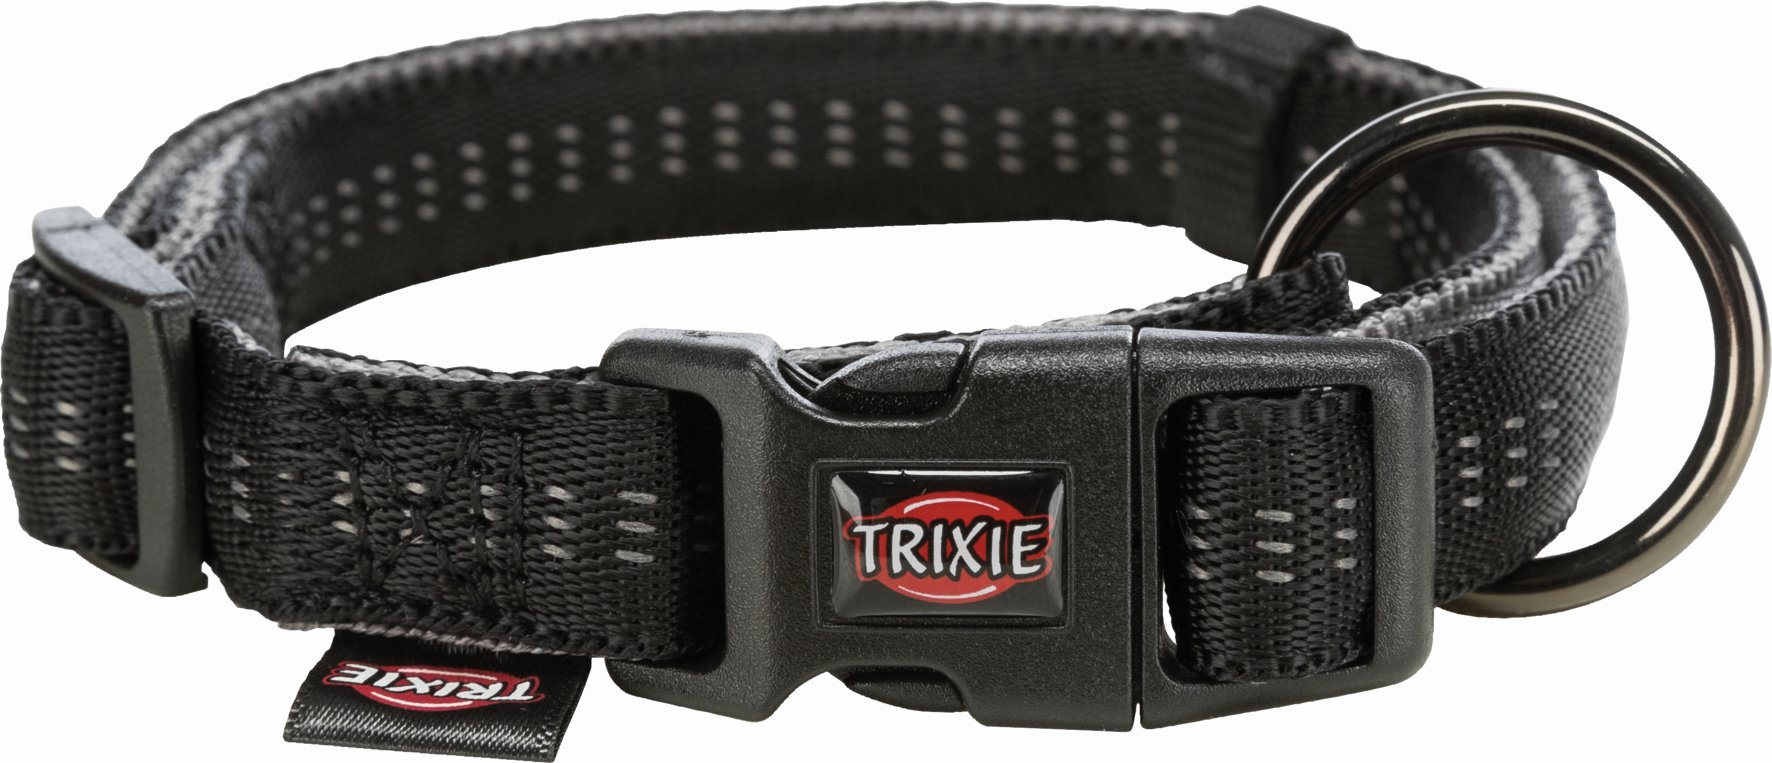  Ошейник Trixie Softline Elegance, XS-S, 25-35см, 15 мм, черный/графитовый